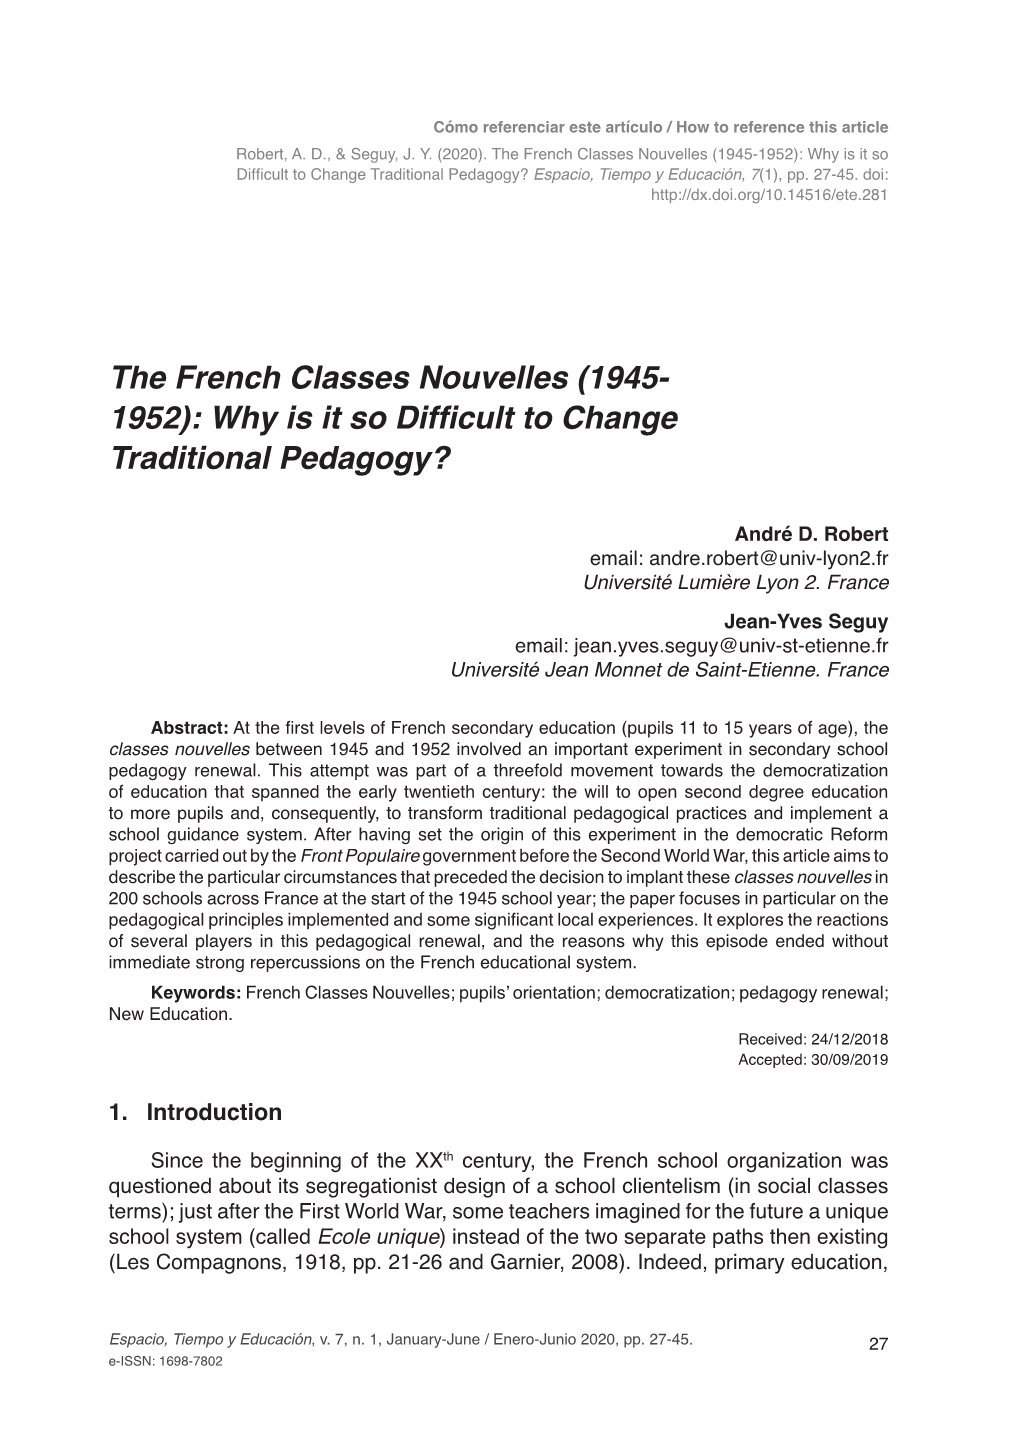 Why Is It So Difficult to Change Traditional Pedagogy? Espacio, Tiempo Y Educación, 7(1), Pp